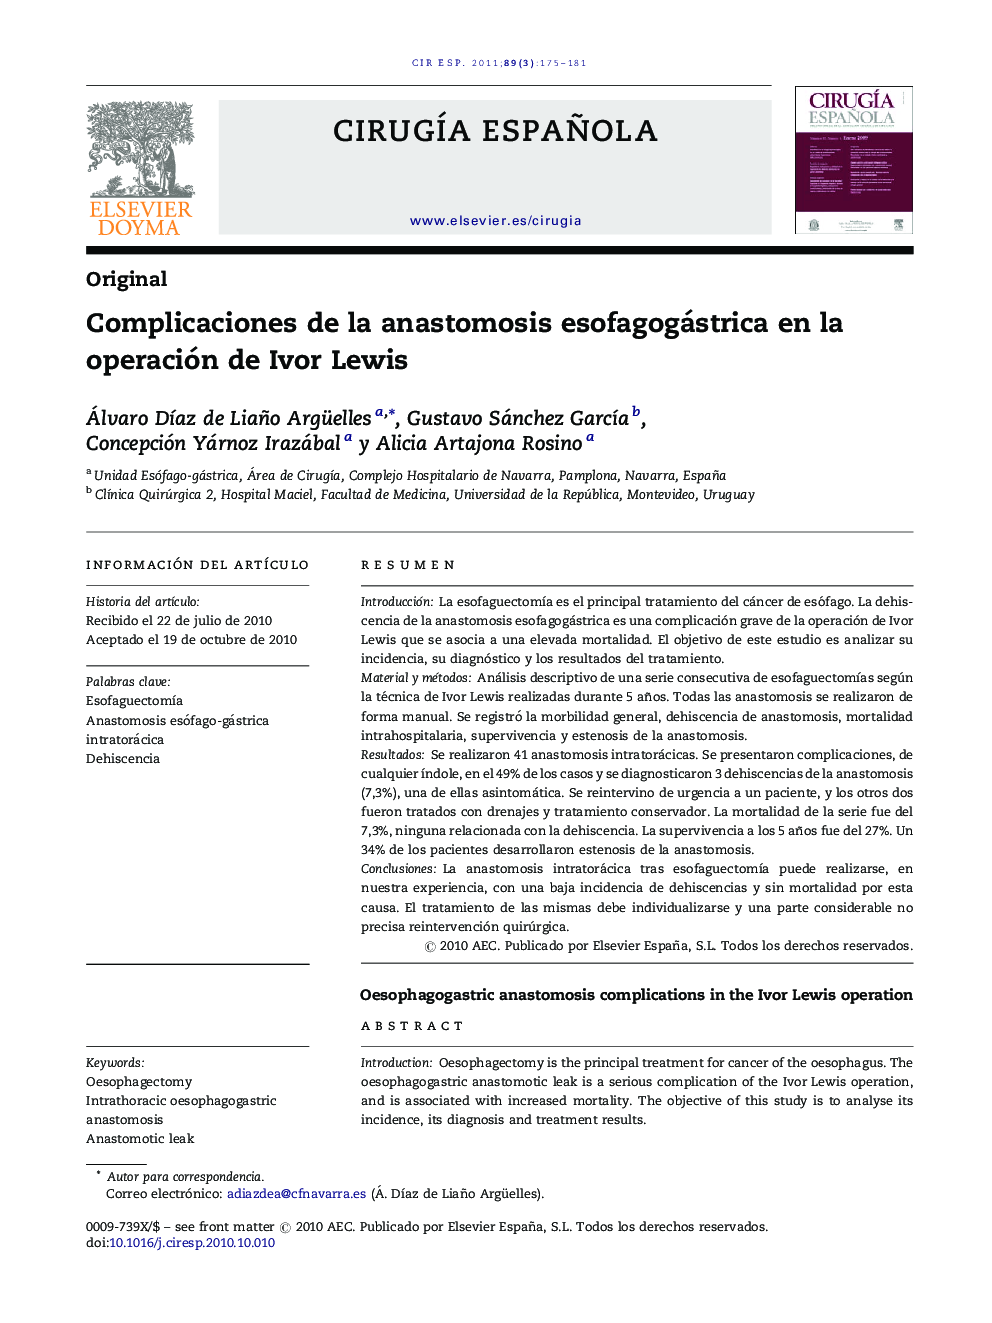 Complicaciones de la anastomosis esofagogástrica en la operación de Ivor Lewis